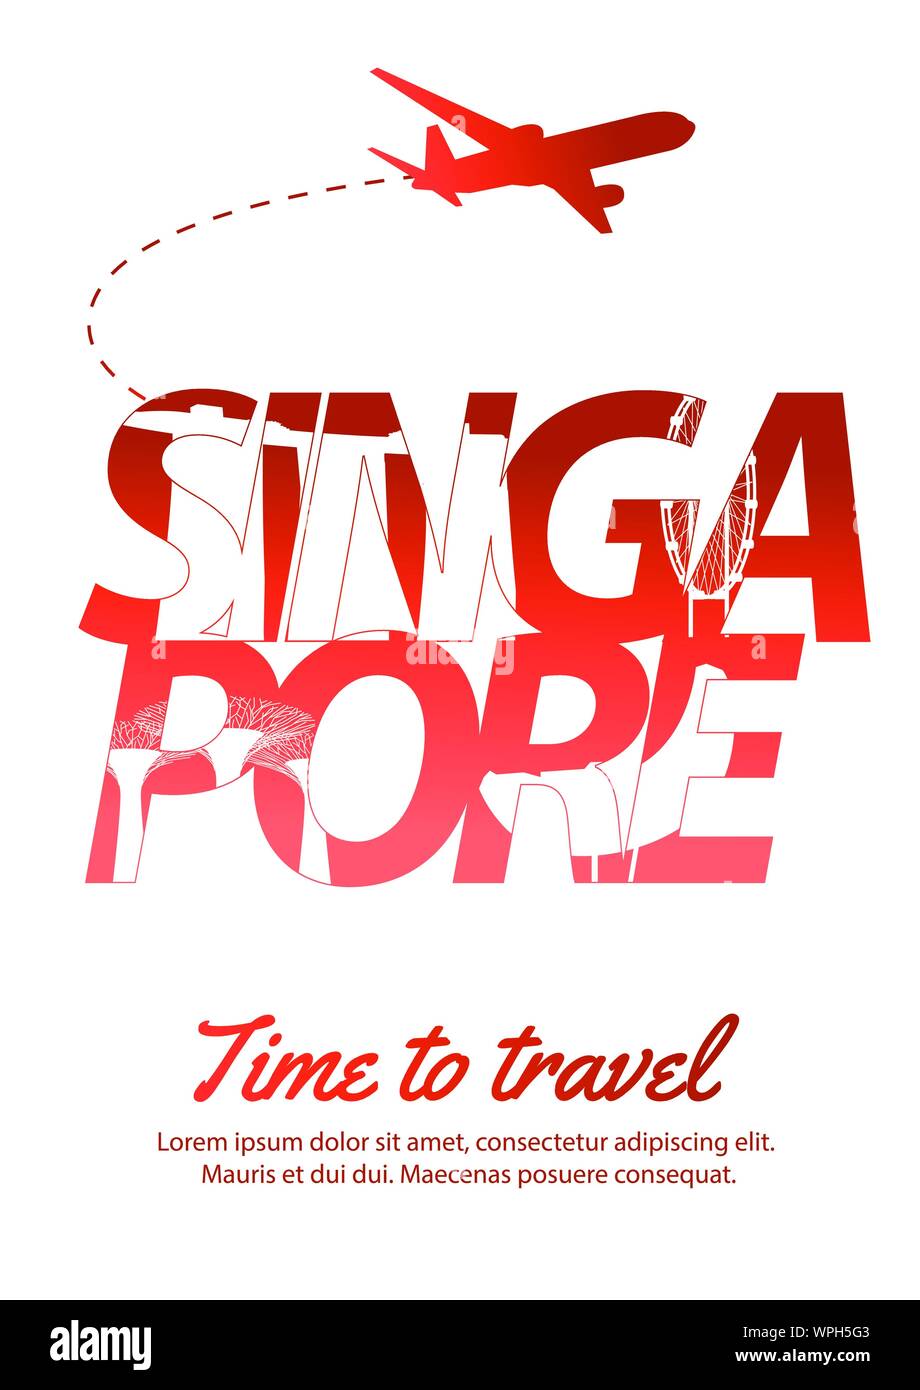 Singapour célèbre style silhouette texte intérieur,couleur du drapeau national rouge et blanc,vector illustration Illustration de Vecteur